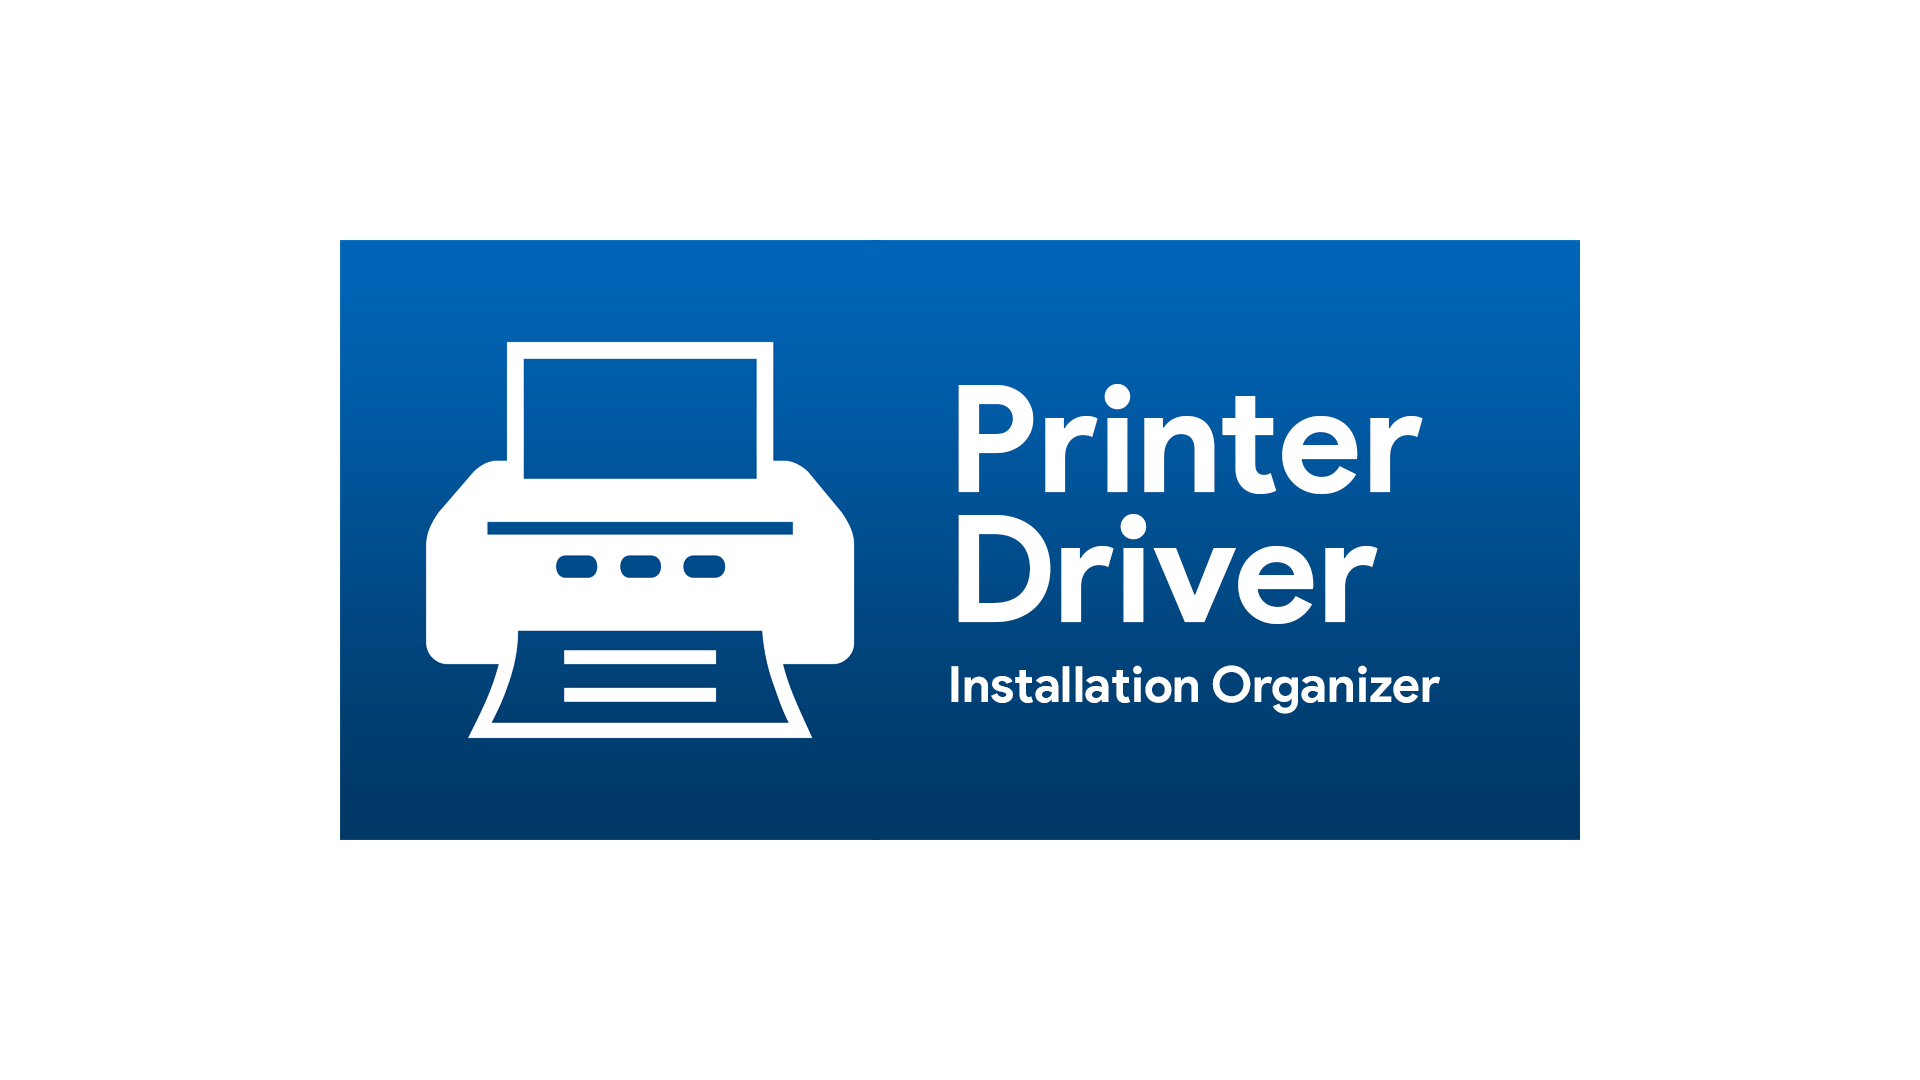 Printer Driver Installation Organizer